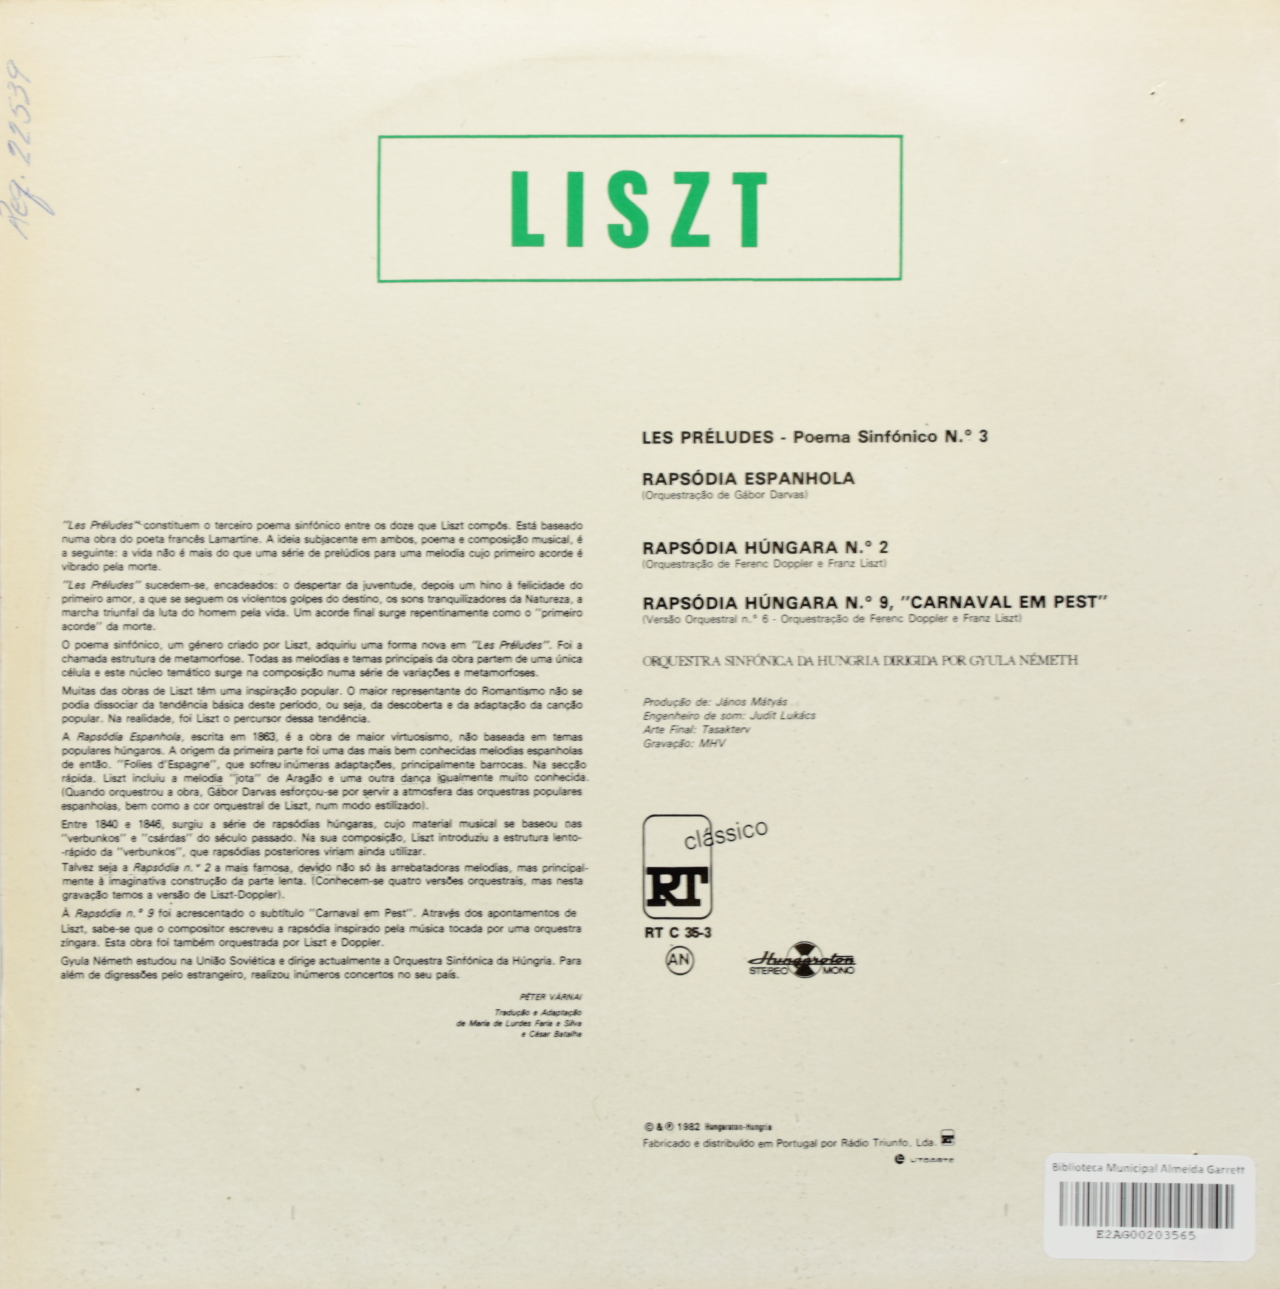 Liszt: Les Préludes; Rapsódia Espanhola; Rapsódias Húngaras No. 2 e 9